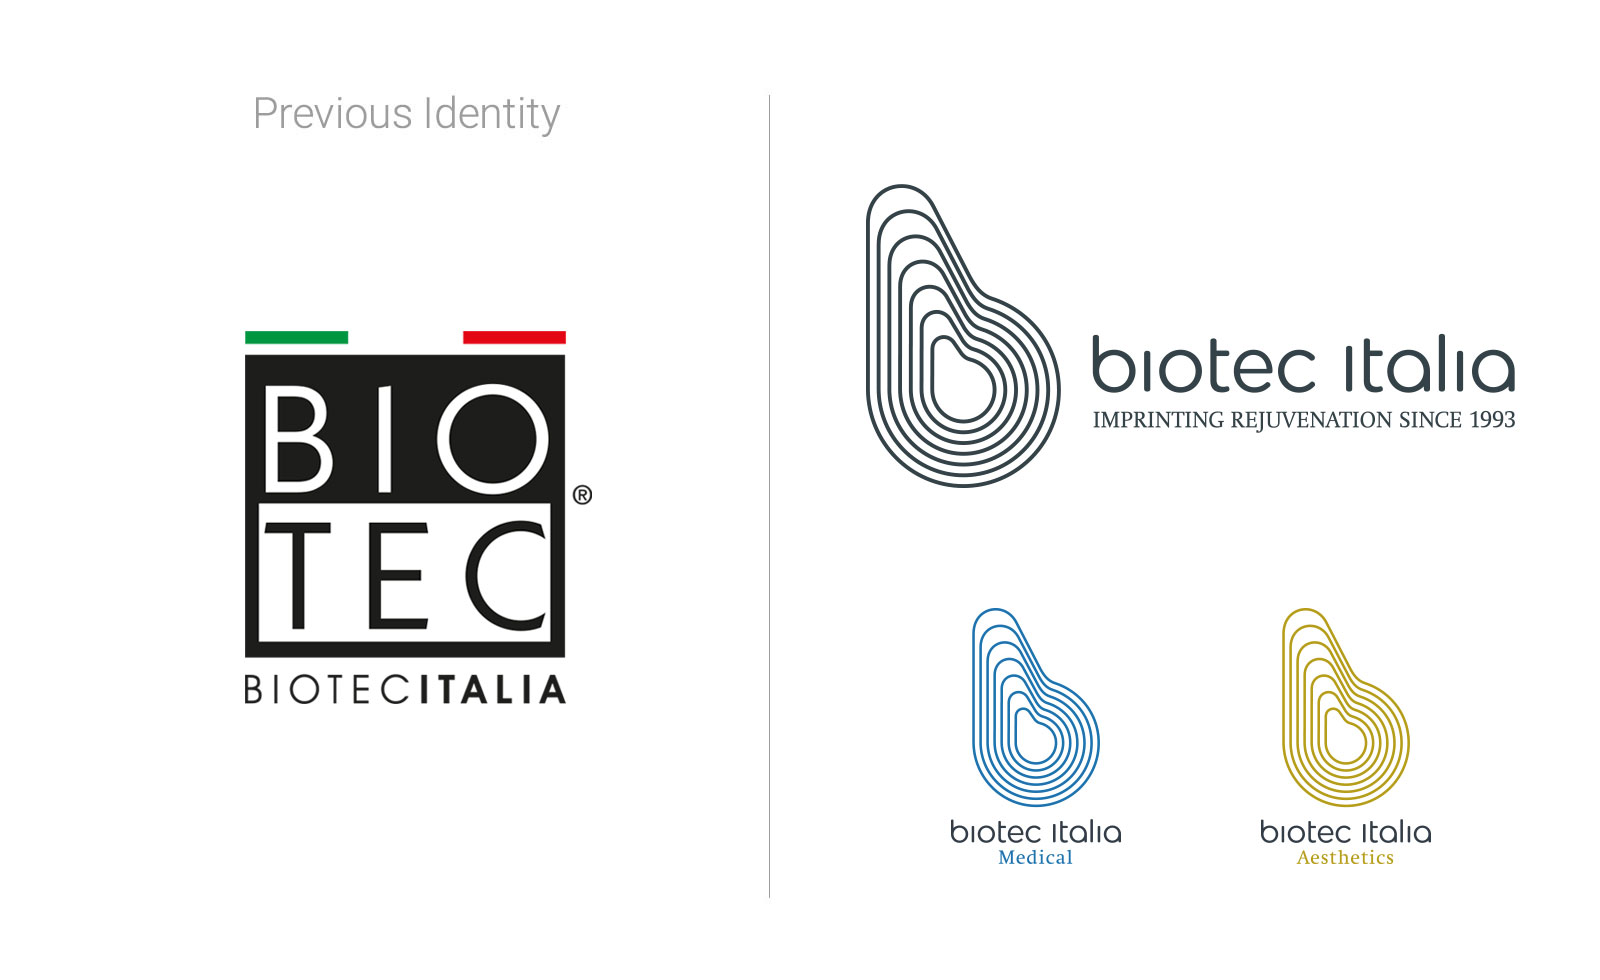 nick pitscheider Biotec Italia rebranding